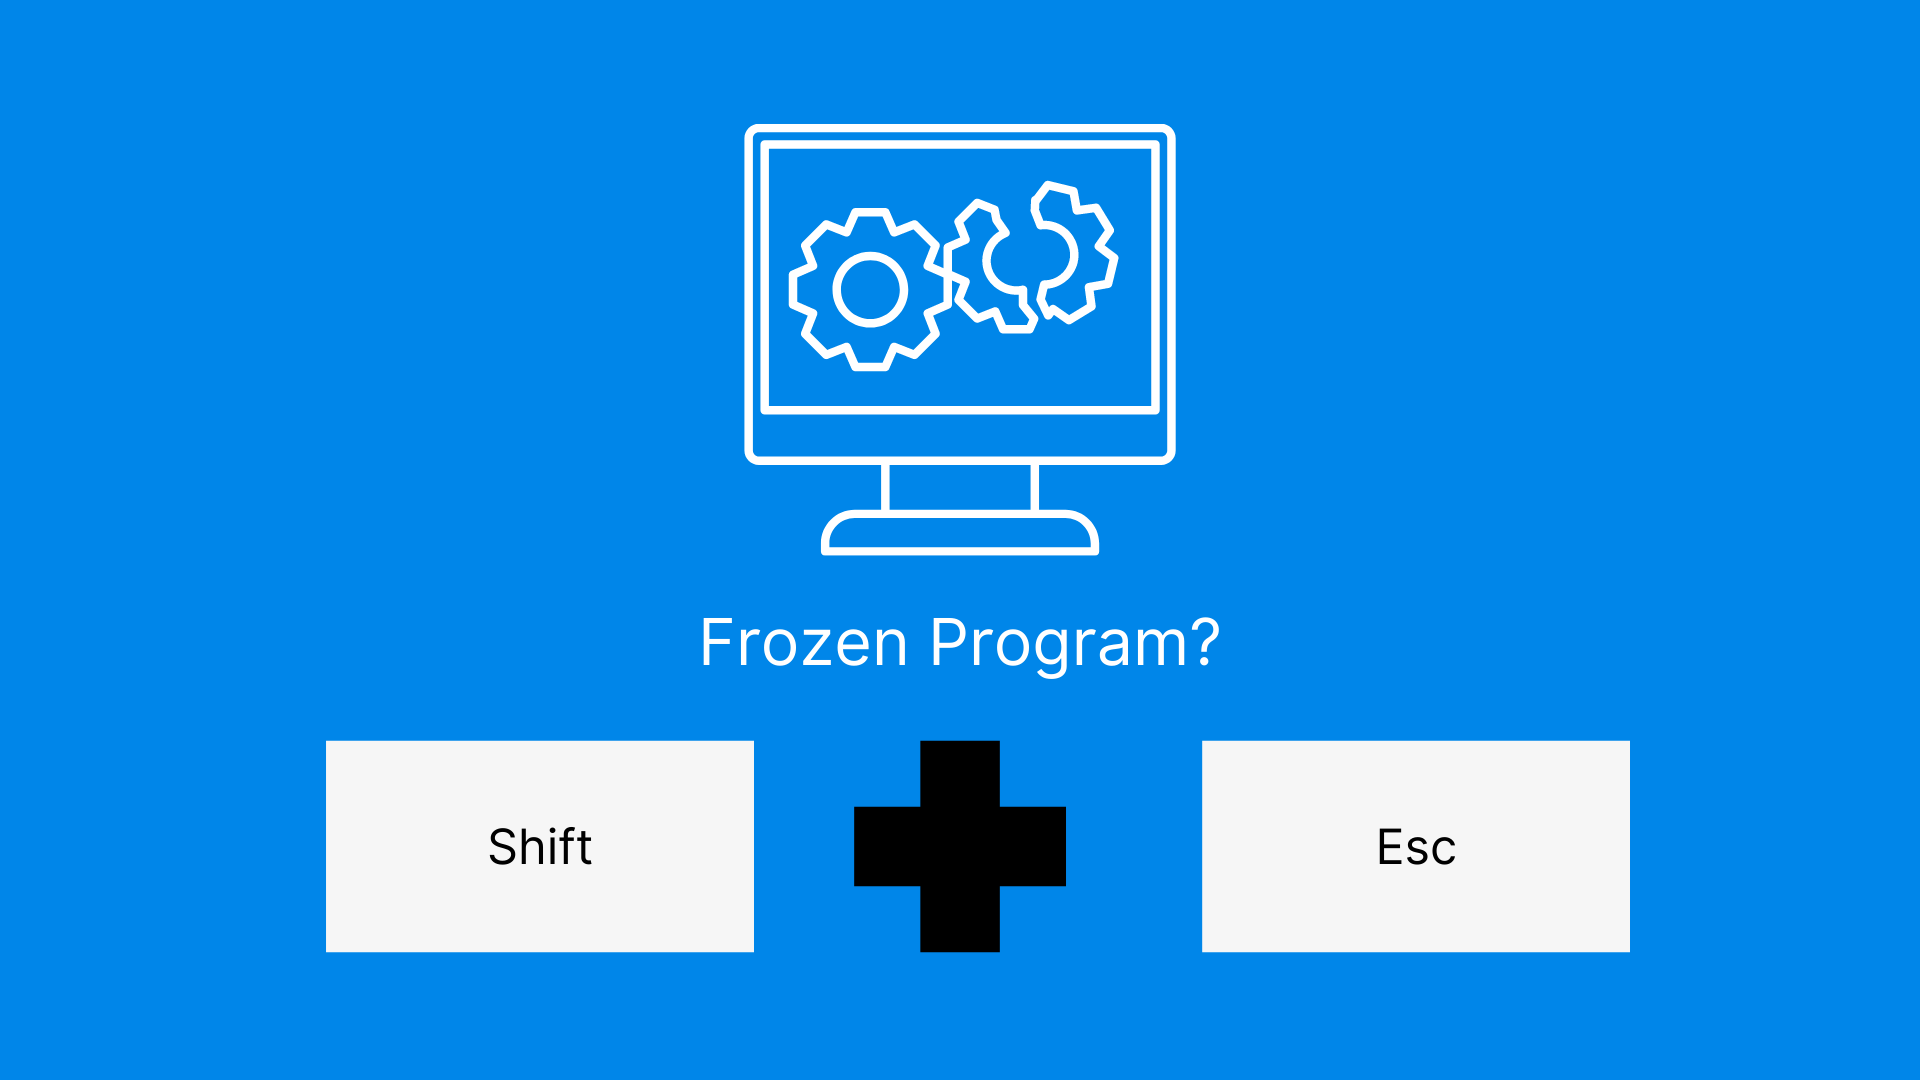 When encountering a frozen program, start by holding 